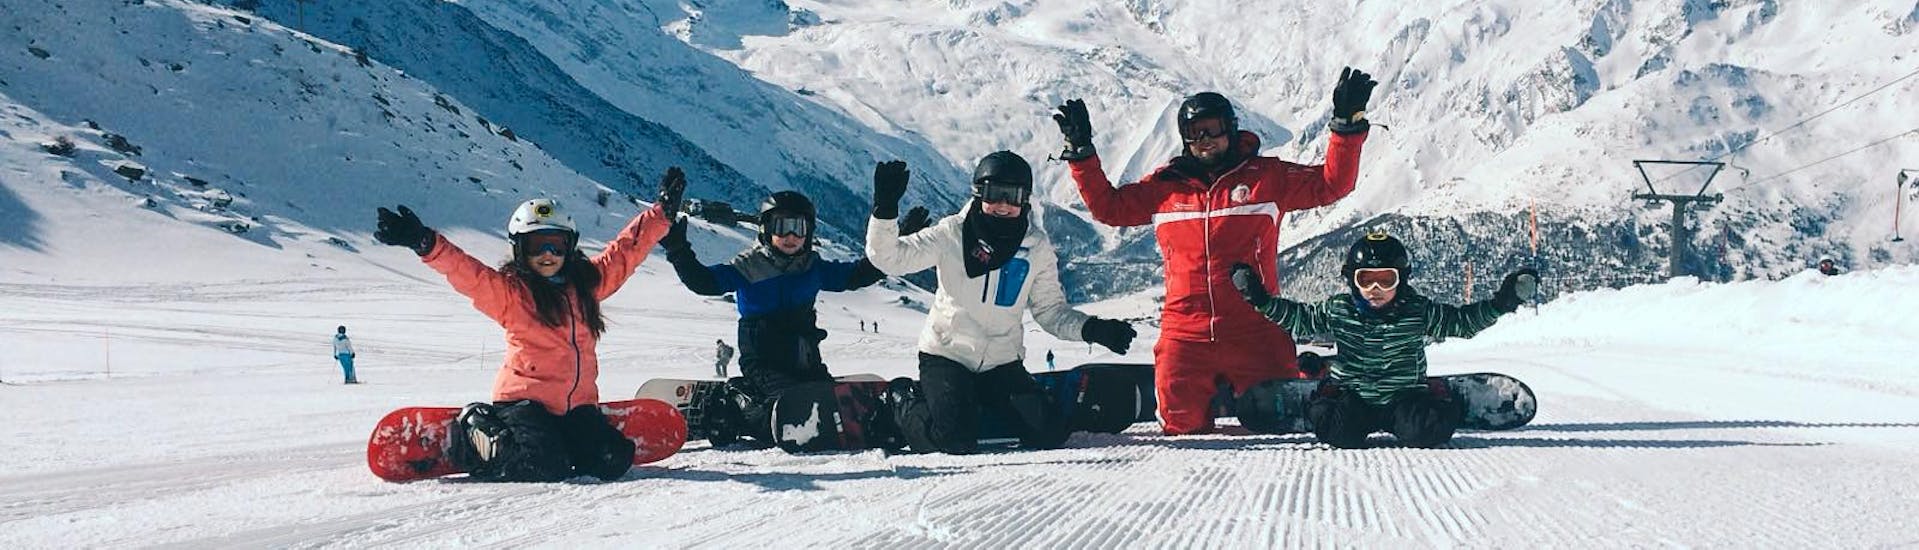 Lezioni di Snowboard a partire da 6 anni per principianti con Swiss Ski School Saas-Grund.